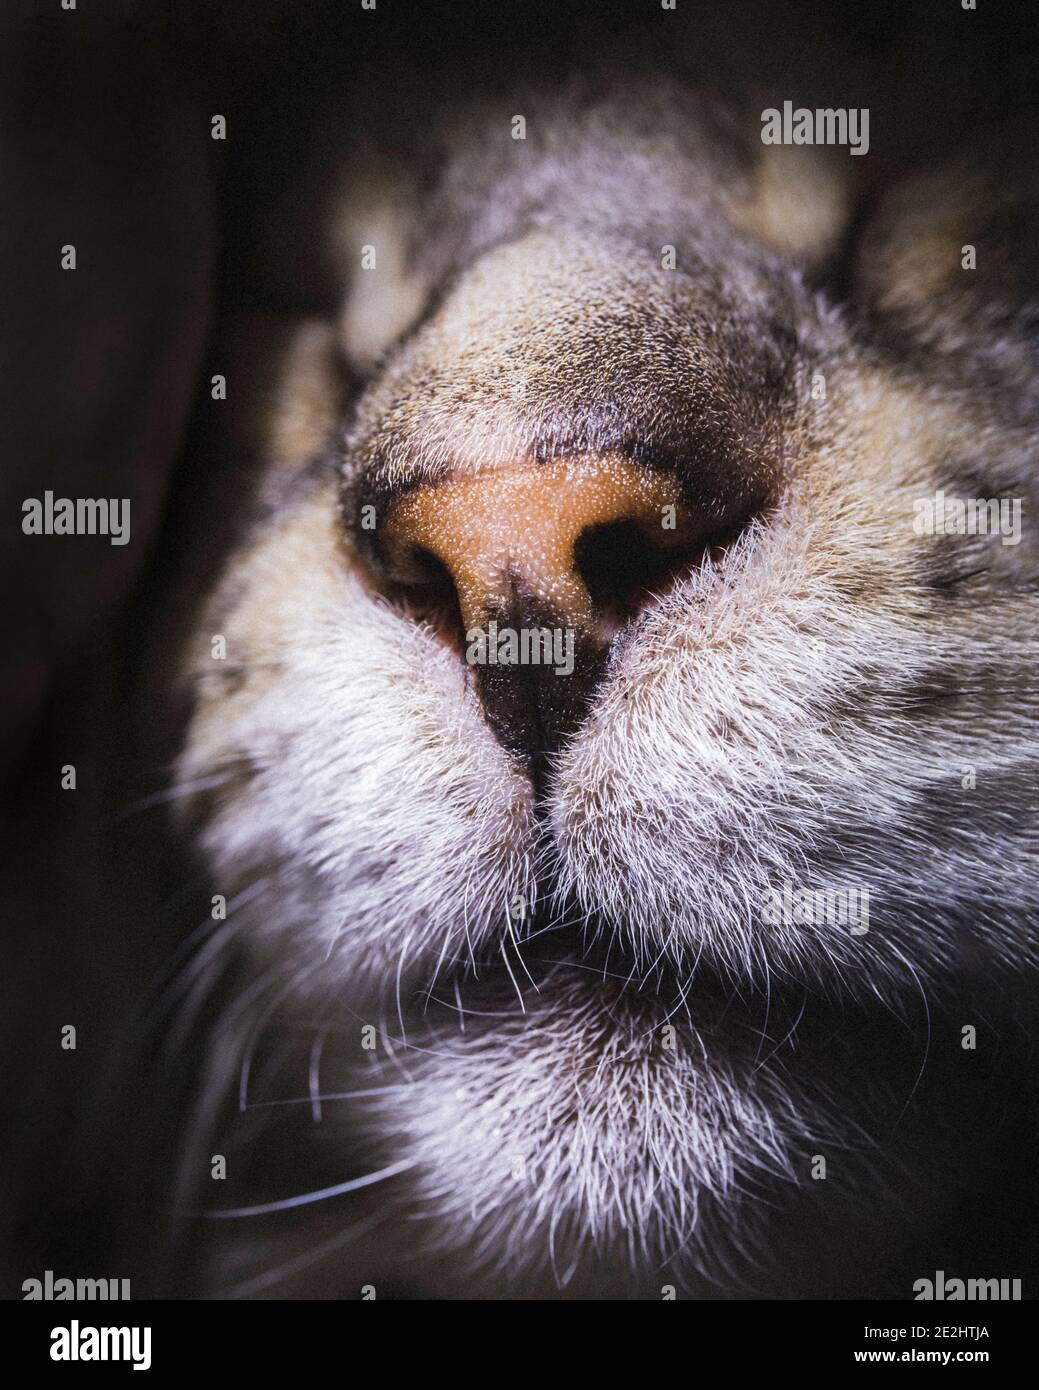 Belle vue rapprochée du nez et de la bouche du chat Bengale mâle Banque D'Images